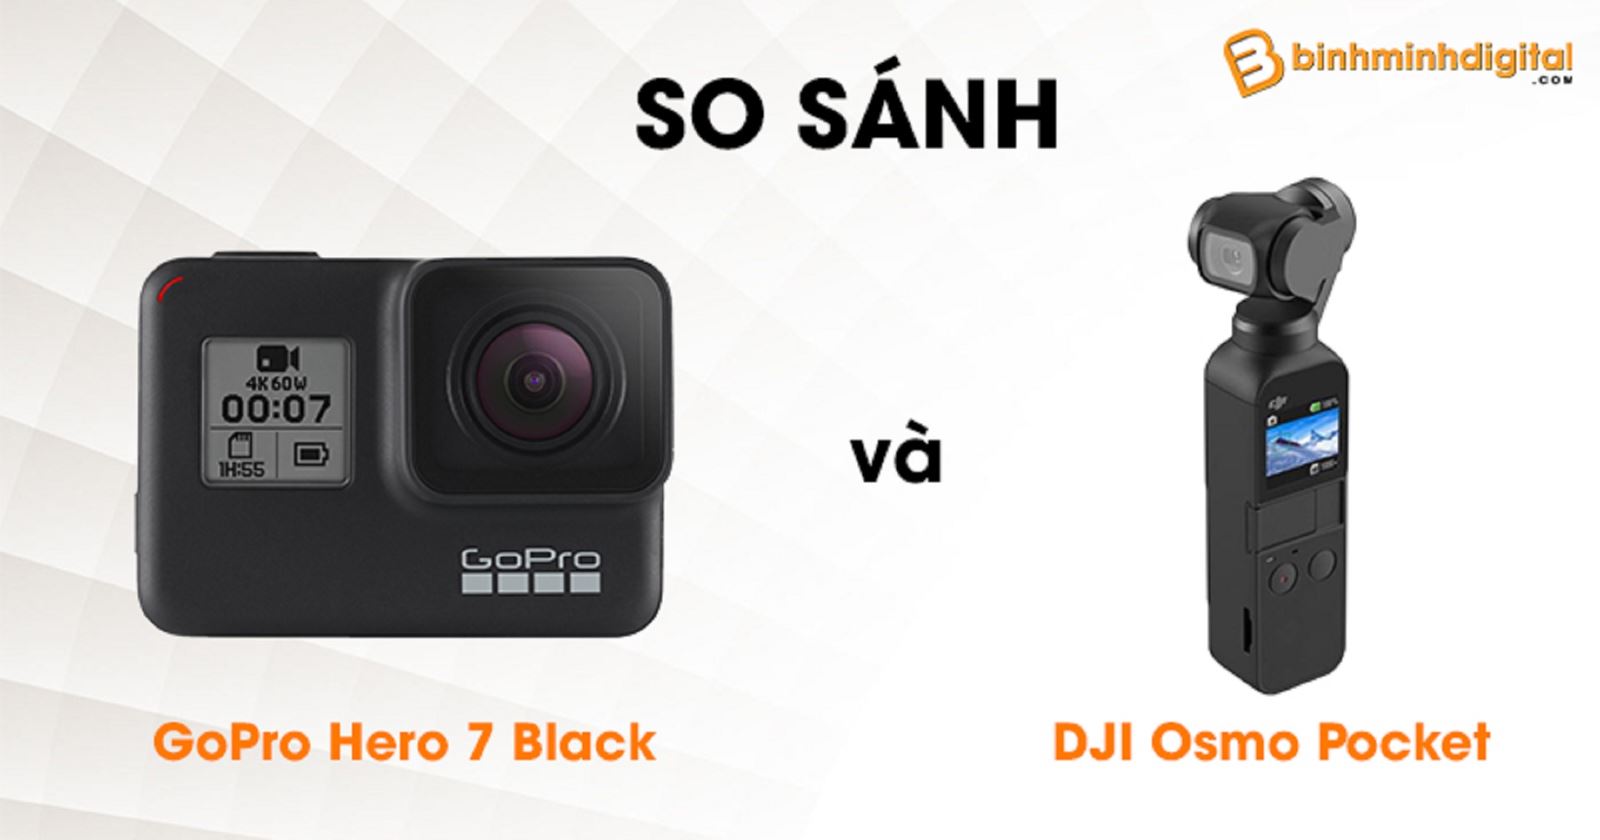 So sánh DJI Osmo Pocket với GoPro Hero 7 Black